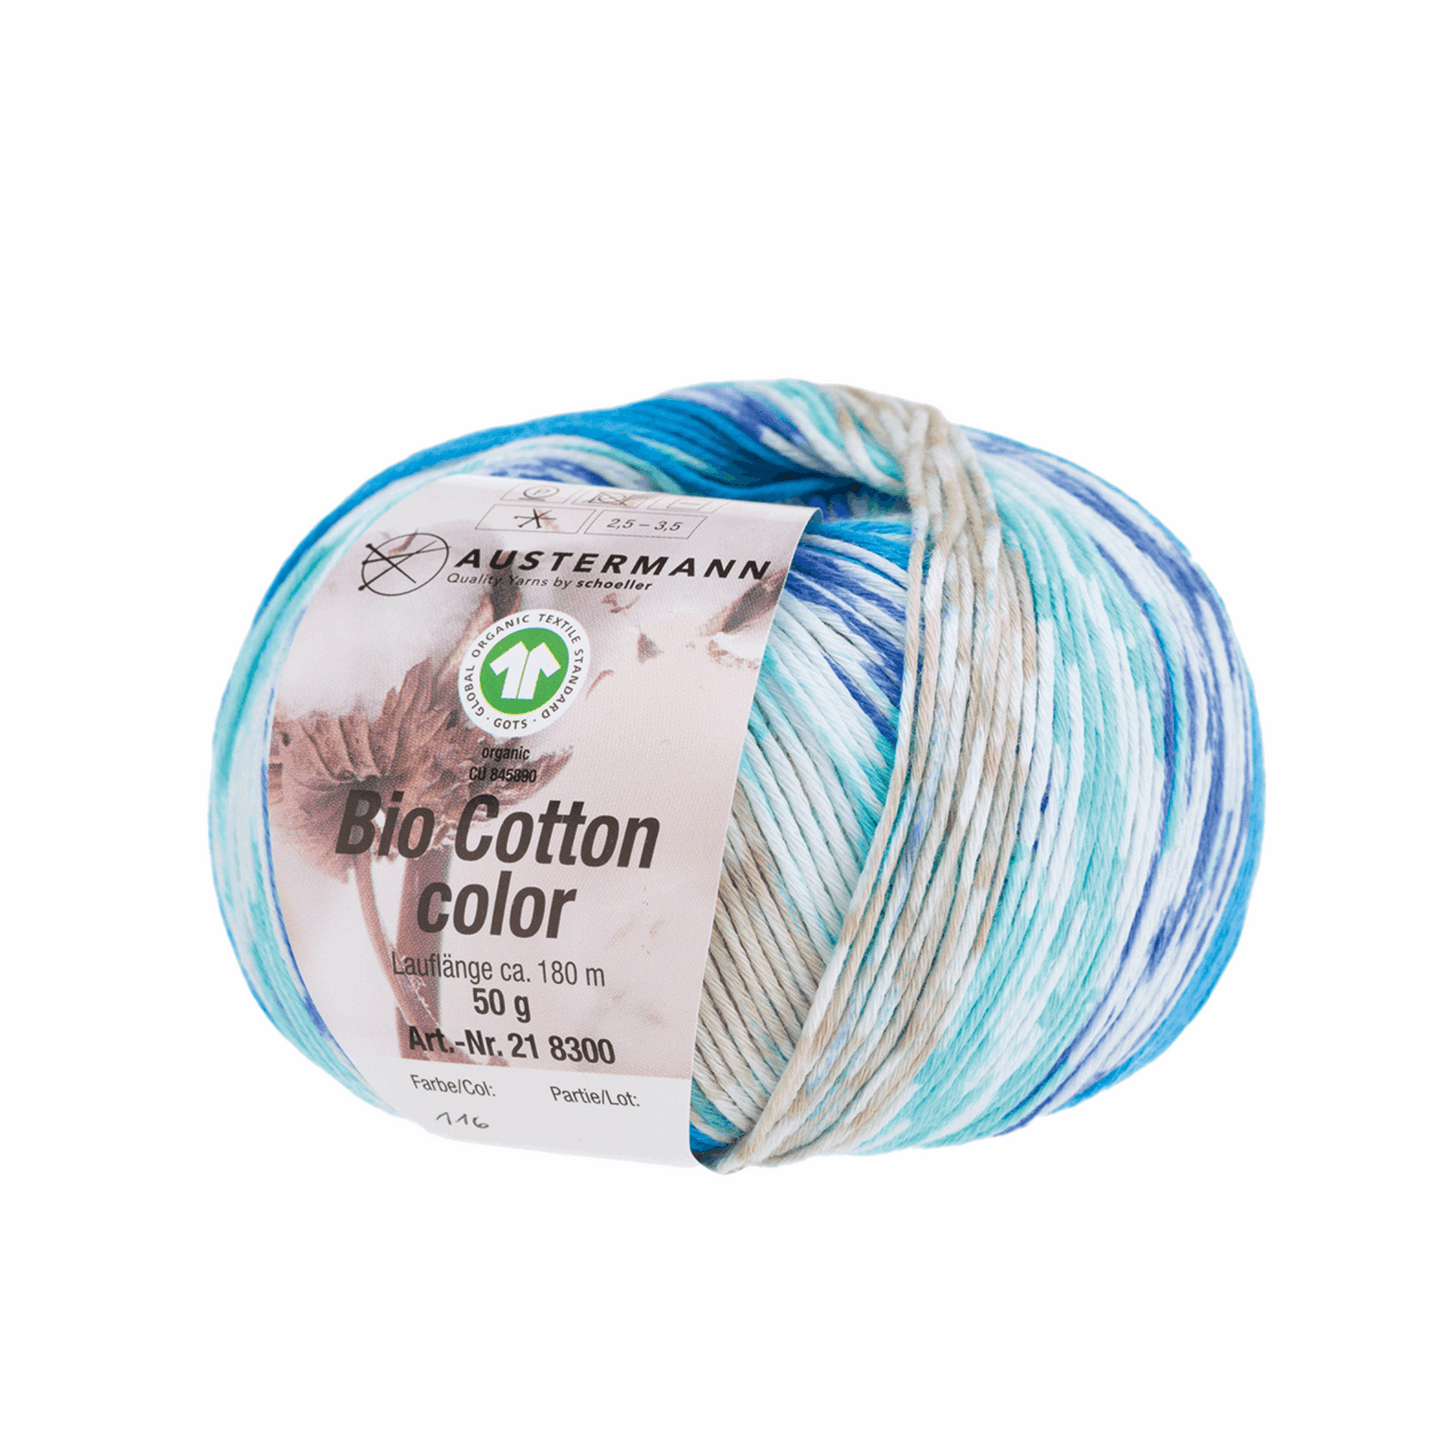 Schoeller-Austermann Gots Organic Cotton color, 50g, 98300, color 116